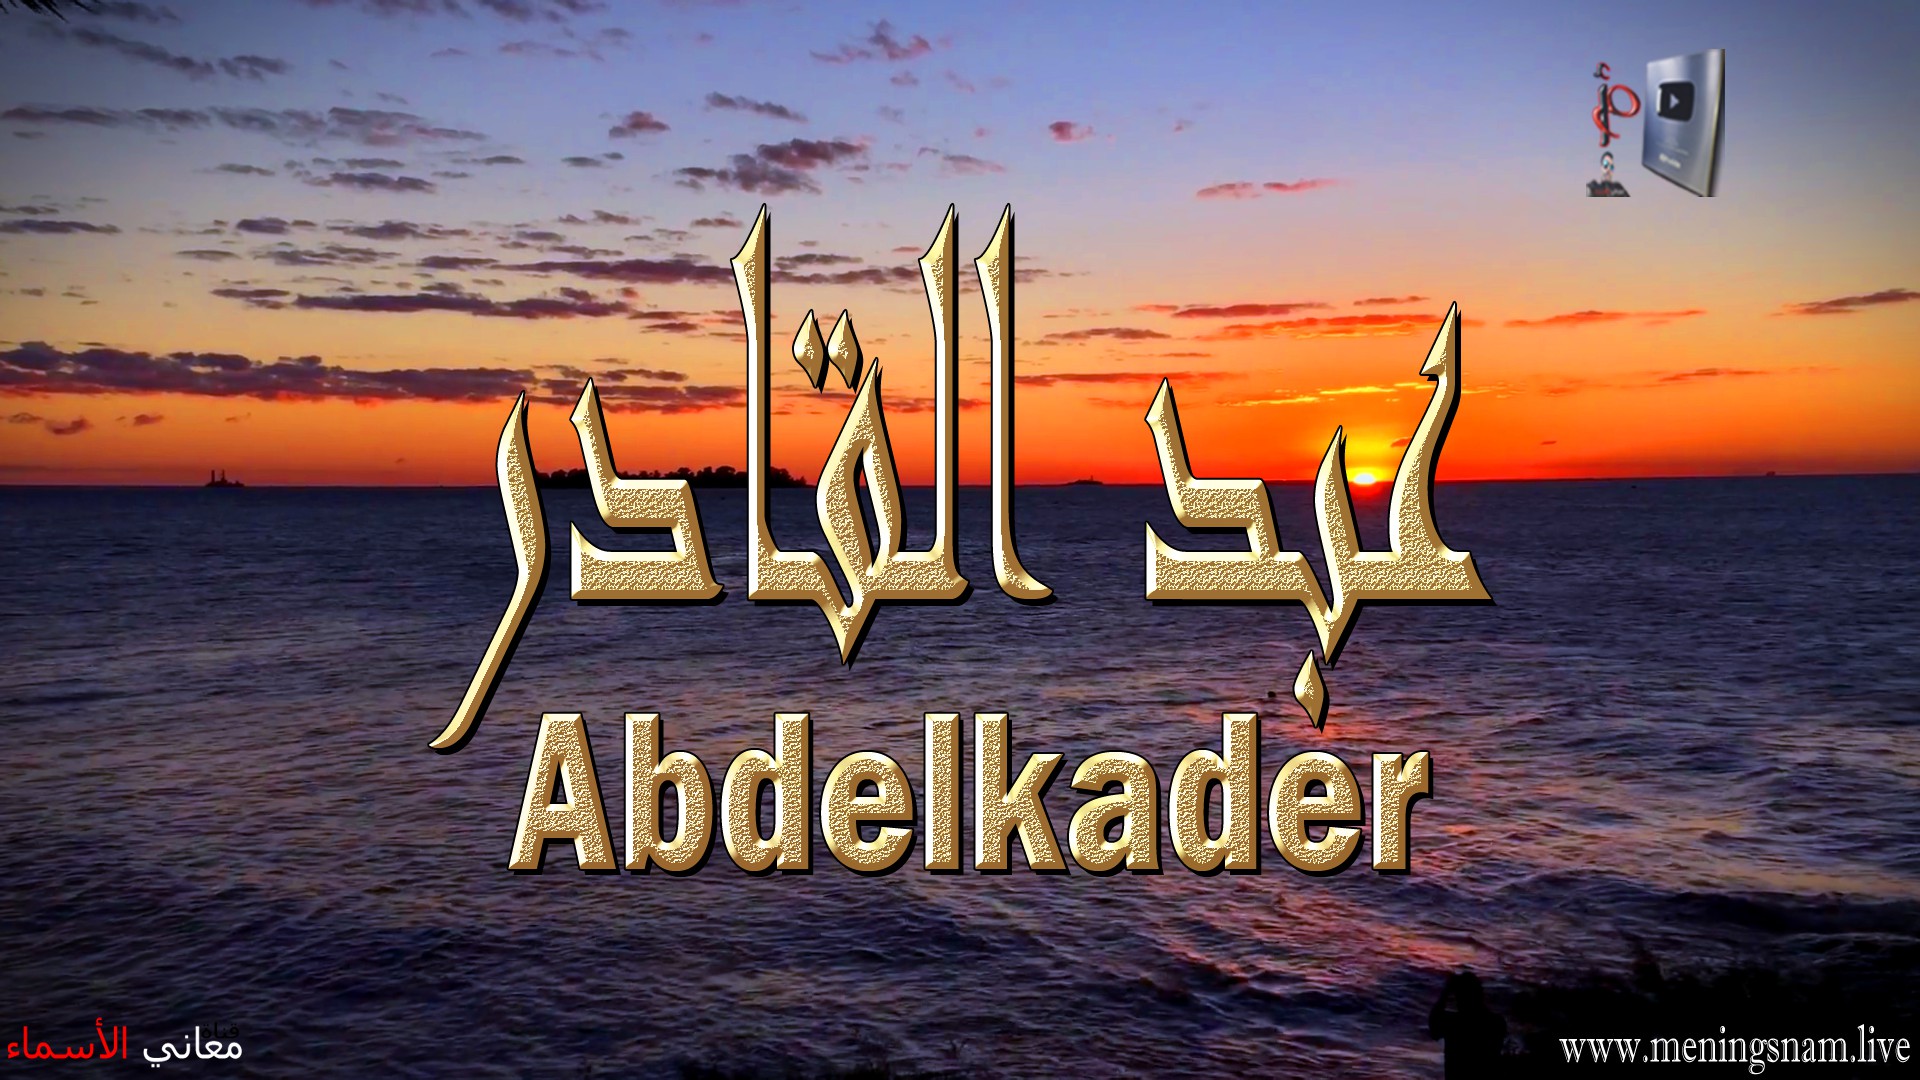 معنى اسم, عبد القادر, وصفات, حامل, هذا الاسم, Abdelkader,